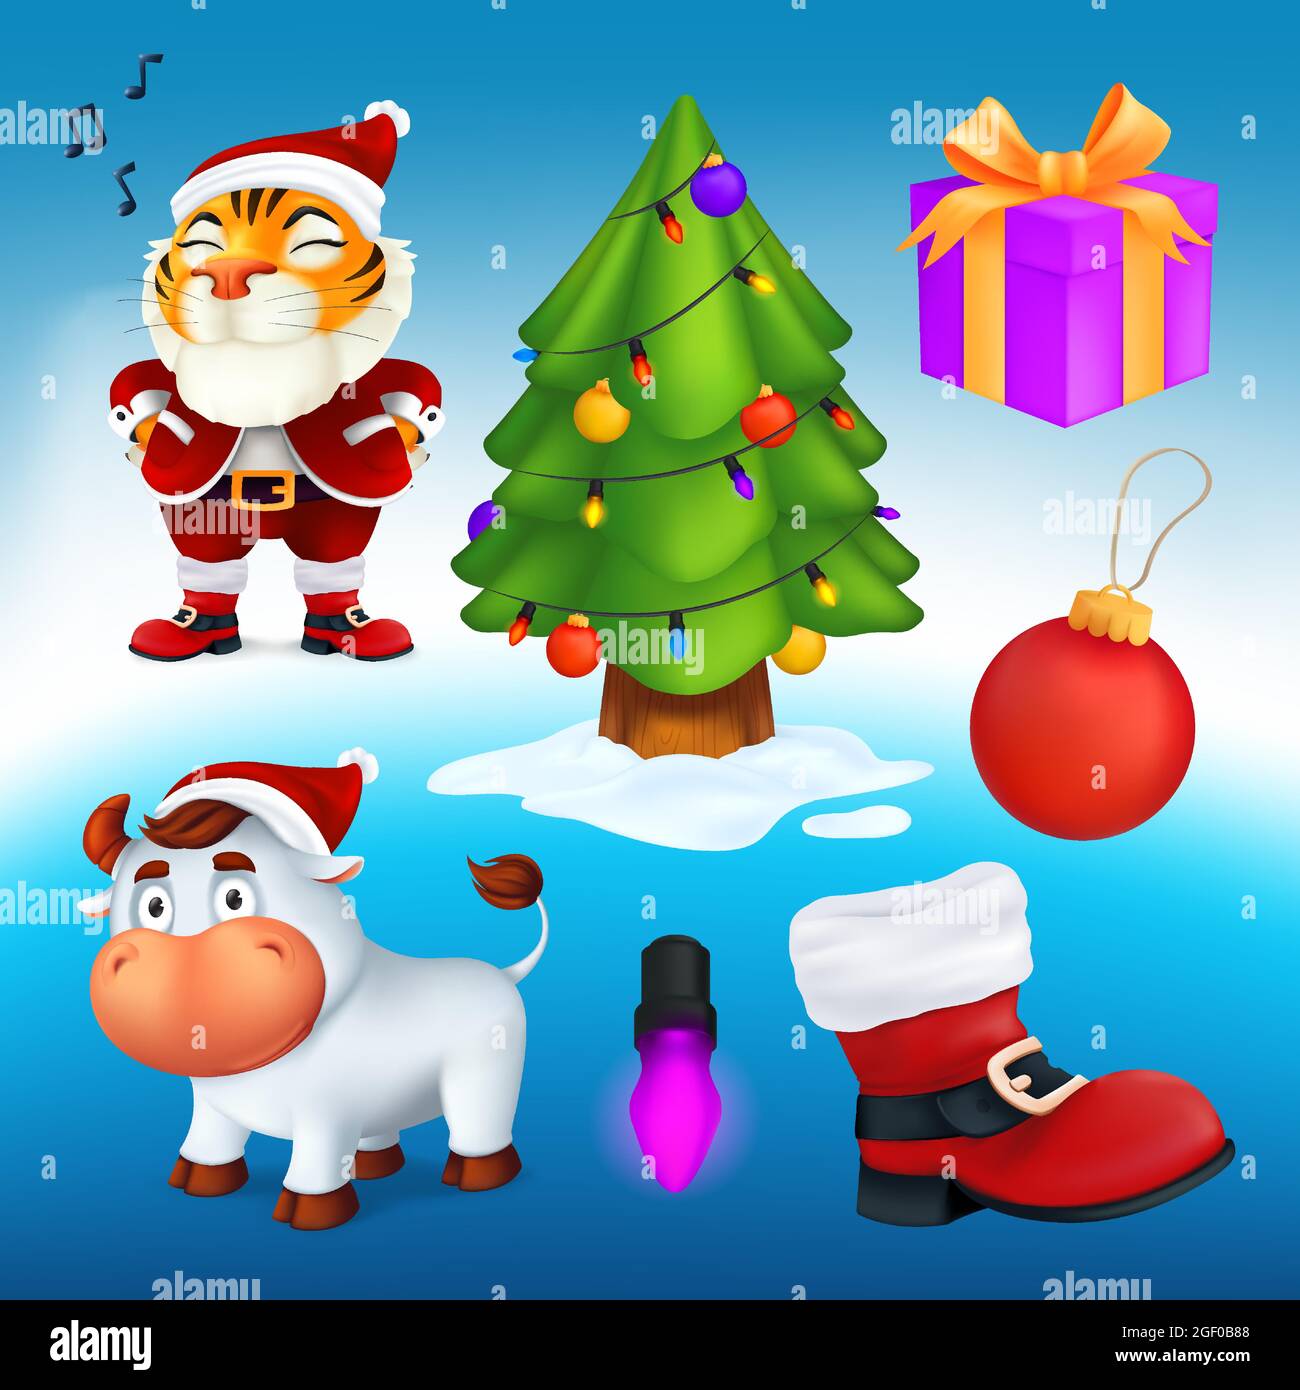 Vektor-Set von Cartoon-Weihnachtsfiguren und Dekorationselemente: Ein Baum, Geschenkbox, roter Stiefel, Girlande-Lampe, Ball, Tiger in Santa's Kostüm, weiß BU Stock Vektor